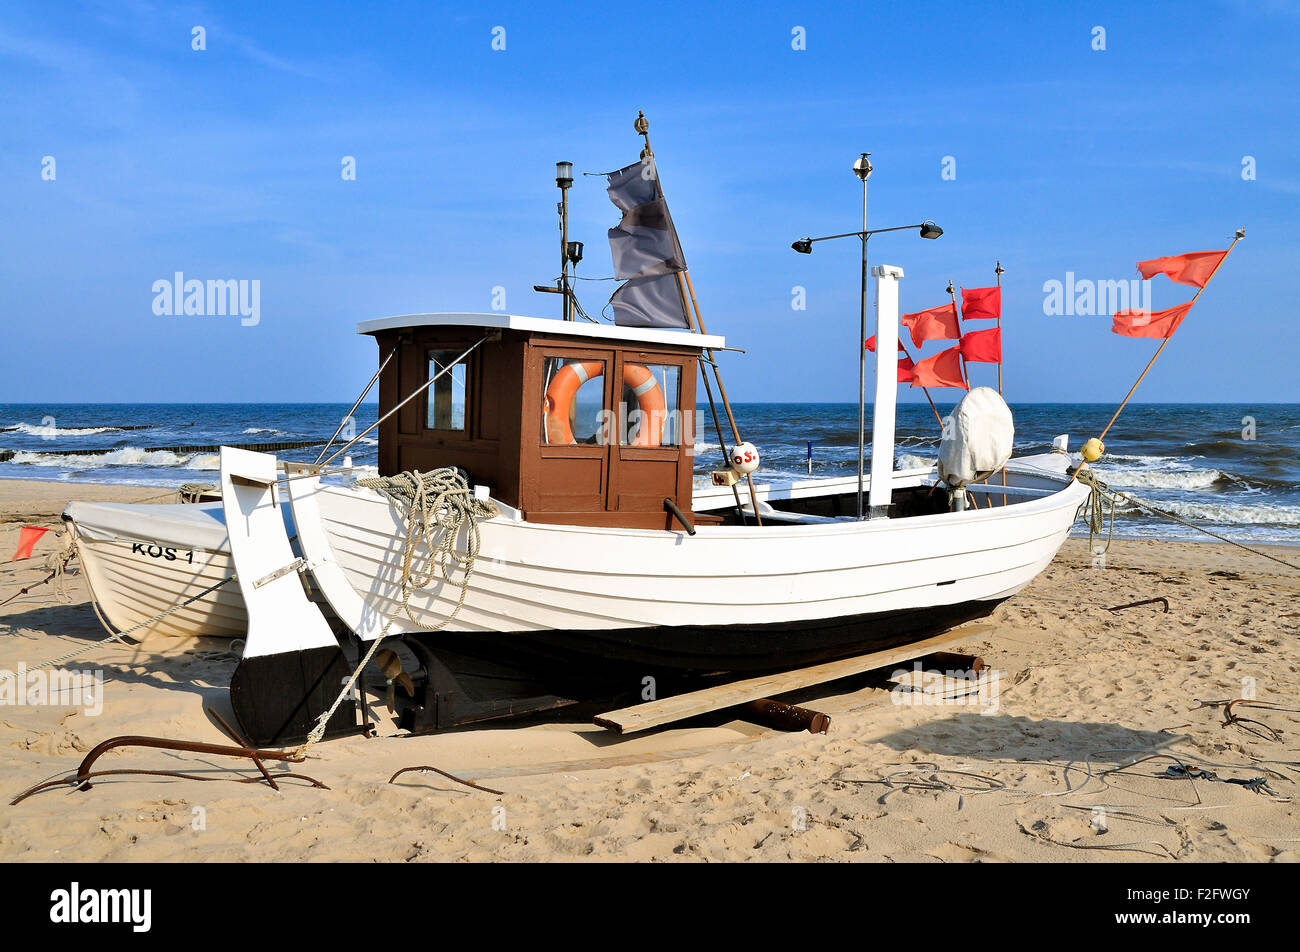 Angelboot/Fischerboot mit roten Markierungsfahnen, am Strand, Insel Usedom, Mecklenburg-Western Pomerania, Deutschland Stockfoto